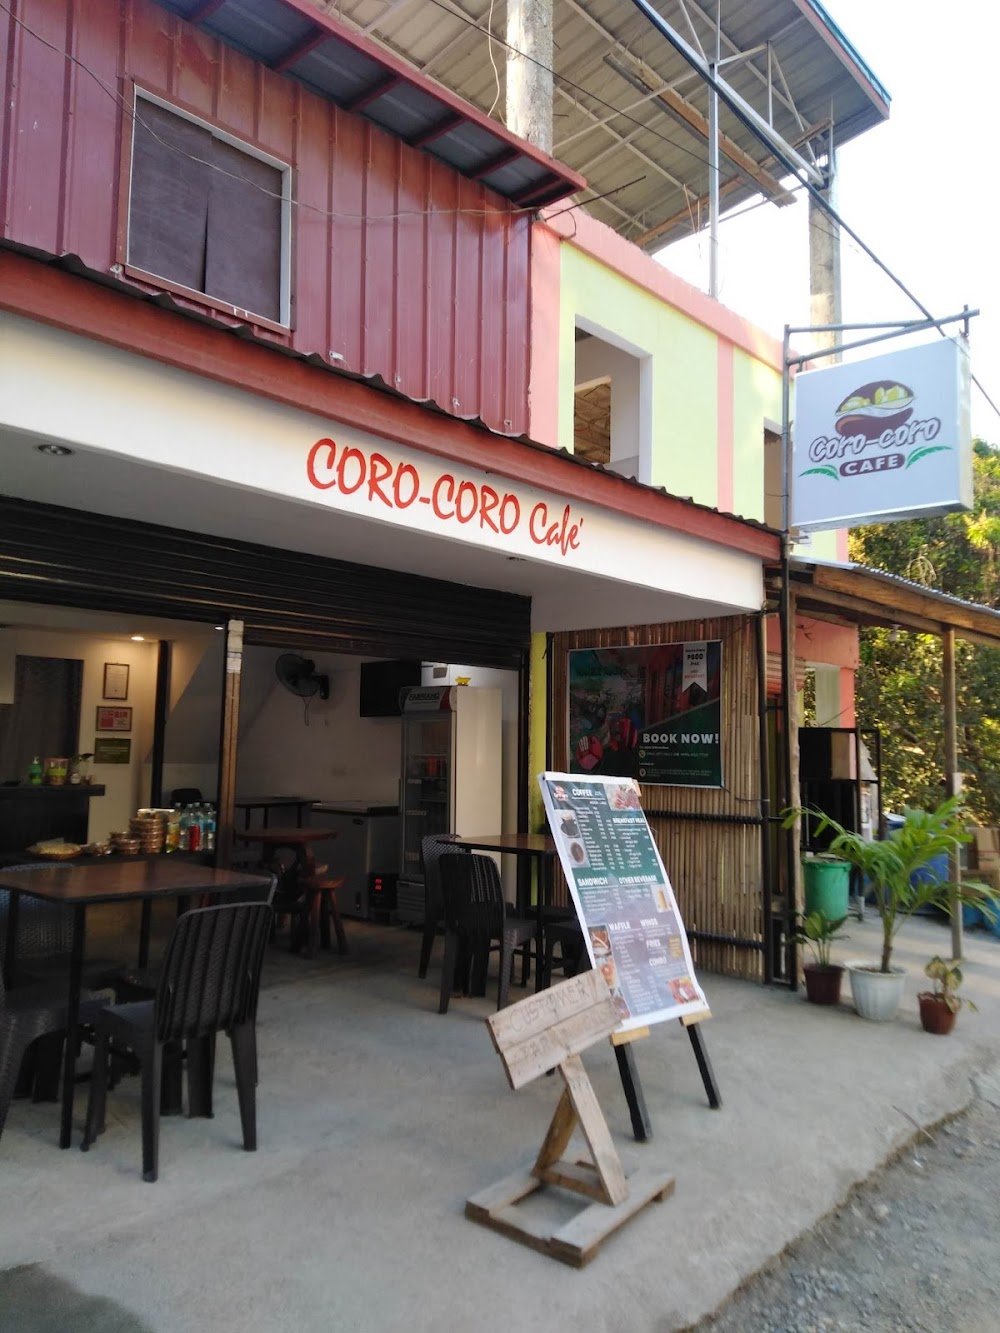 Coro-Coro Cafe